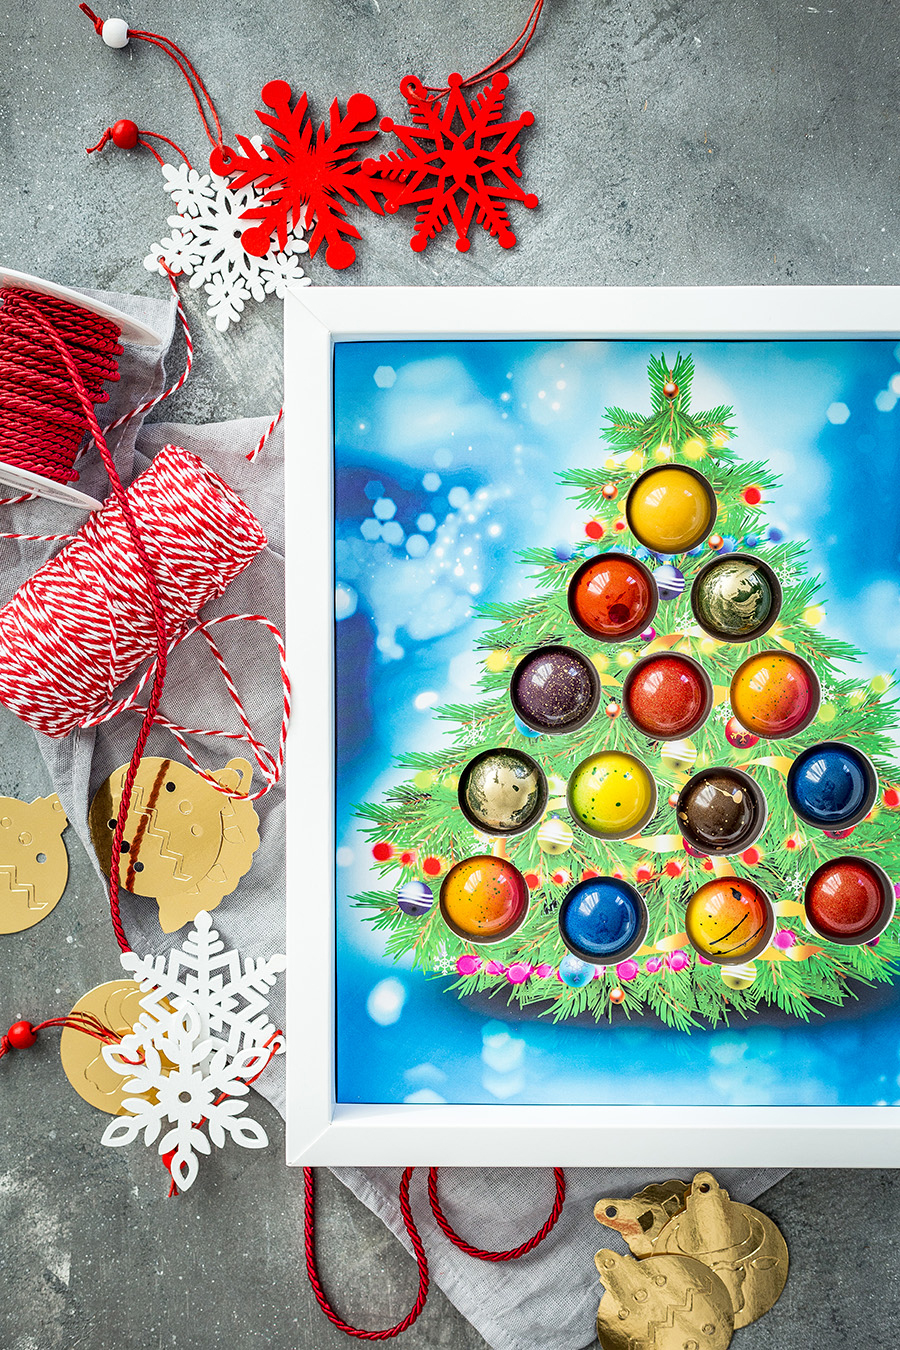 Ёлка из конфет - оригинальный новогодний подарок или изюминка на праздничном столе.